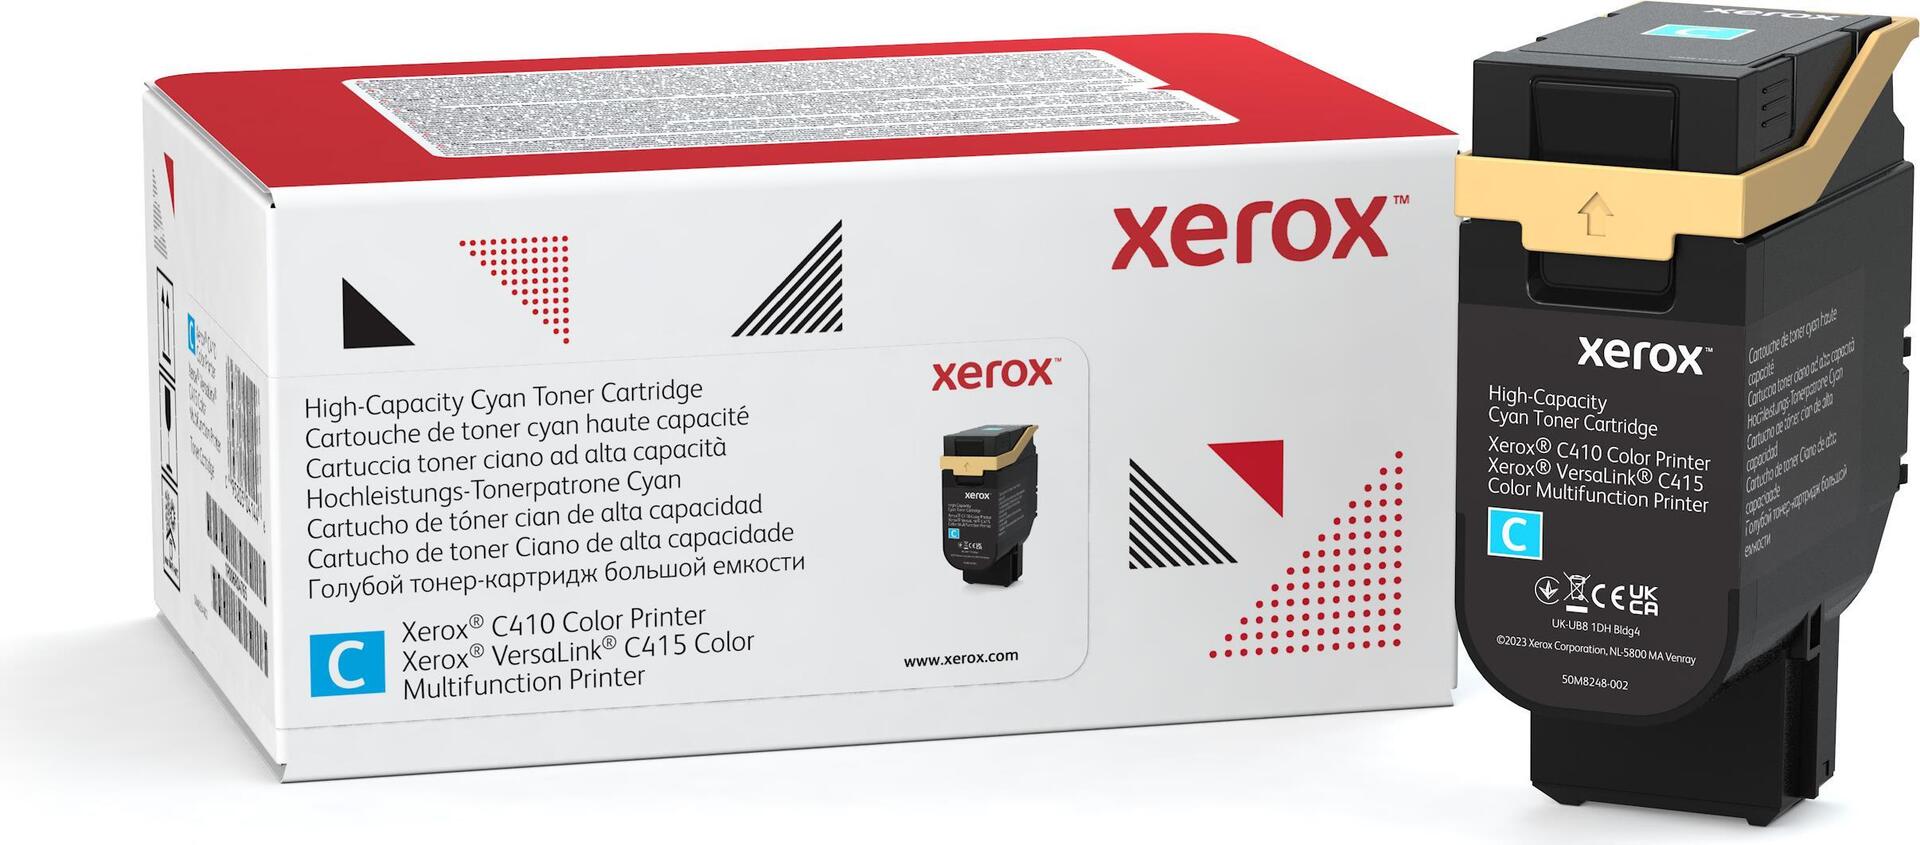 Xerox Mit hoher Kapazität (006R04686)